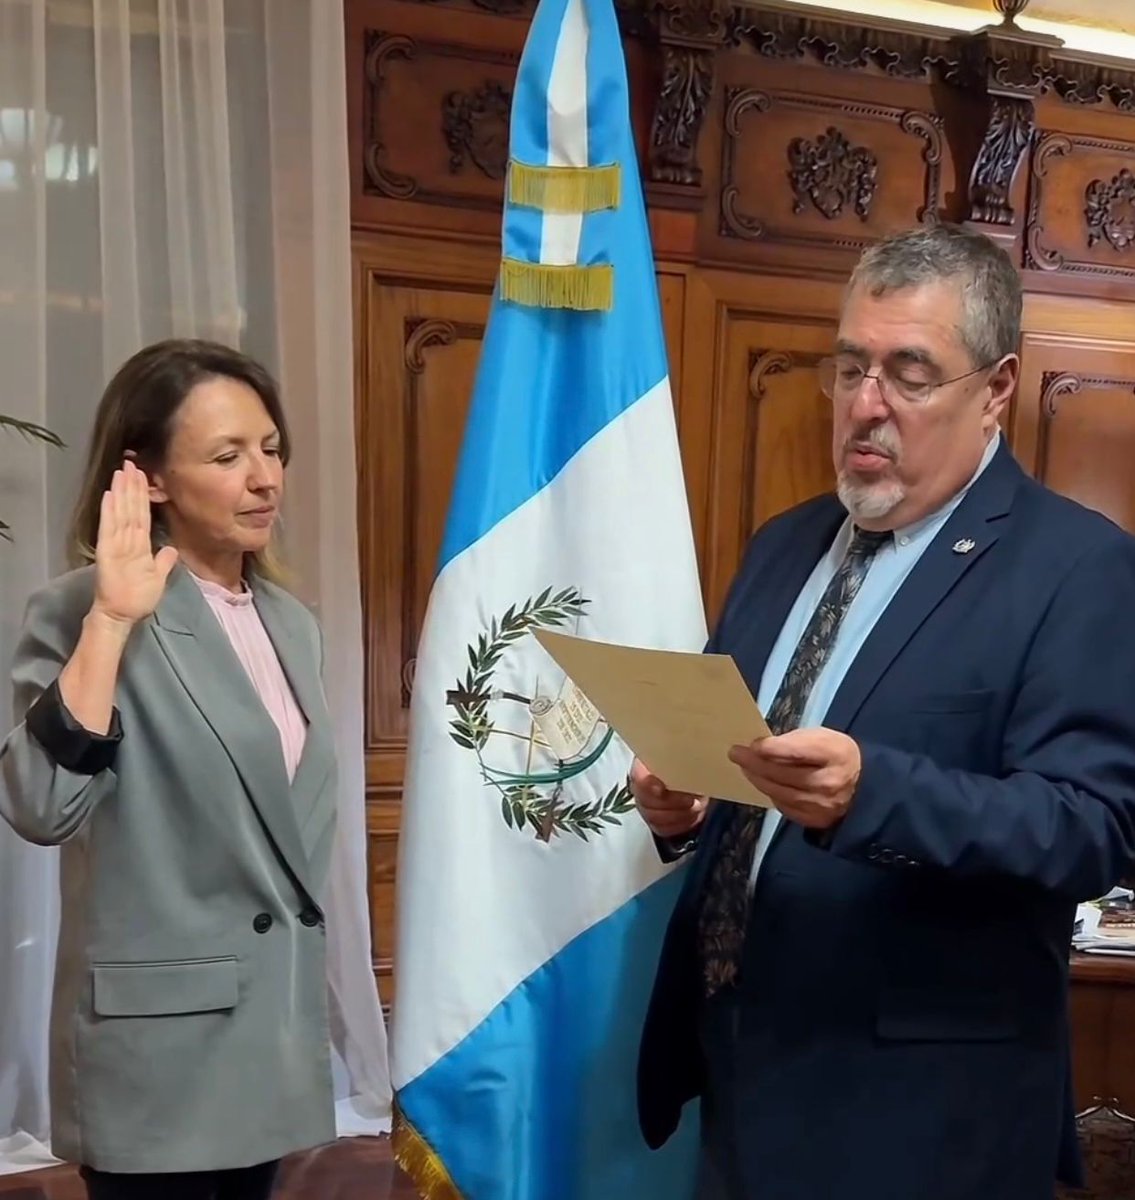 El presidente Bernardo Arévalo juramenta a Ana Patricia Orantes como nueva ministra de Ambiente y Recursos Naturales.

#PatriciaOrantes #Juramentación #Ministra #MARN #Ambiente